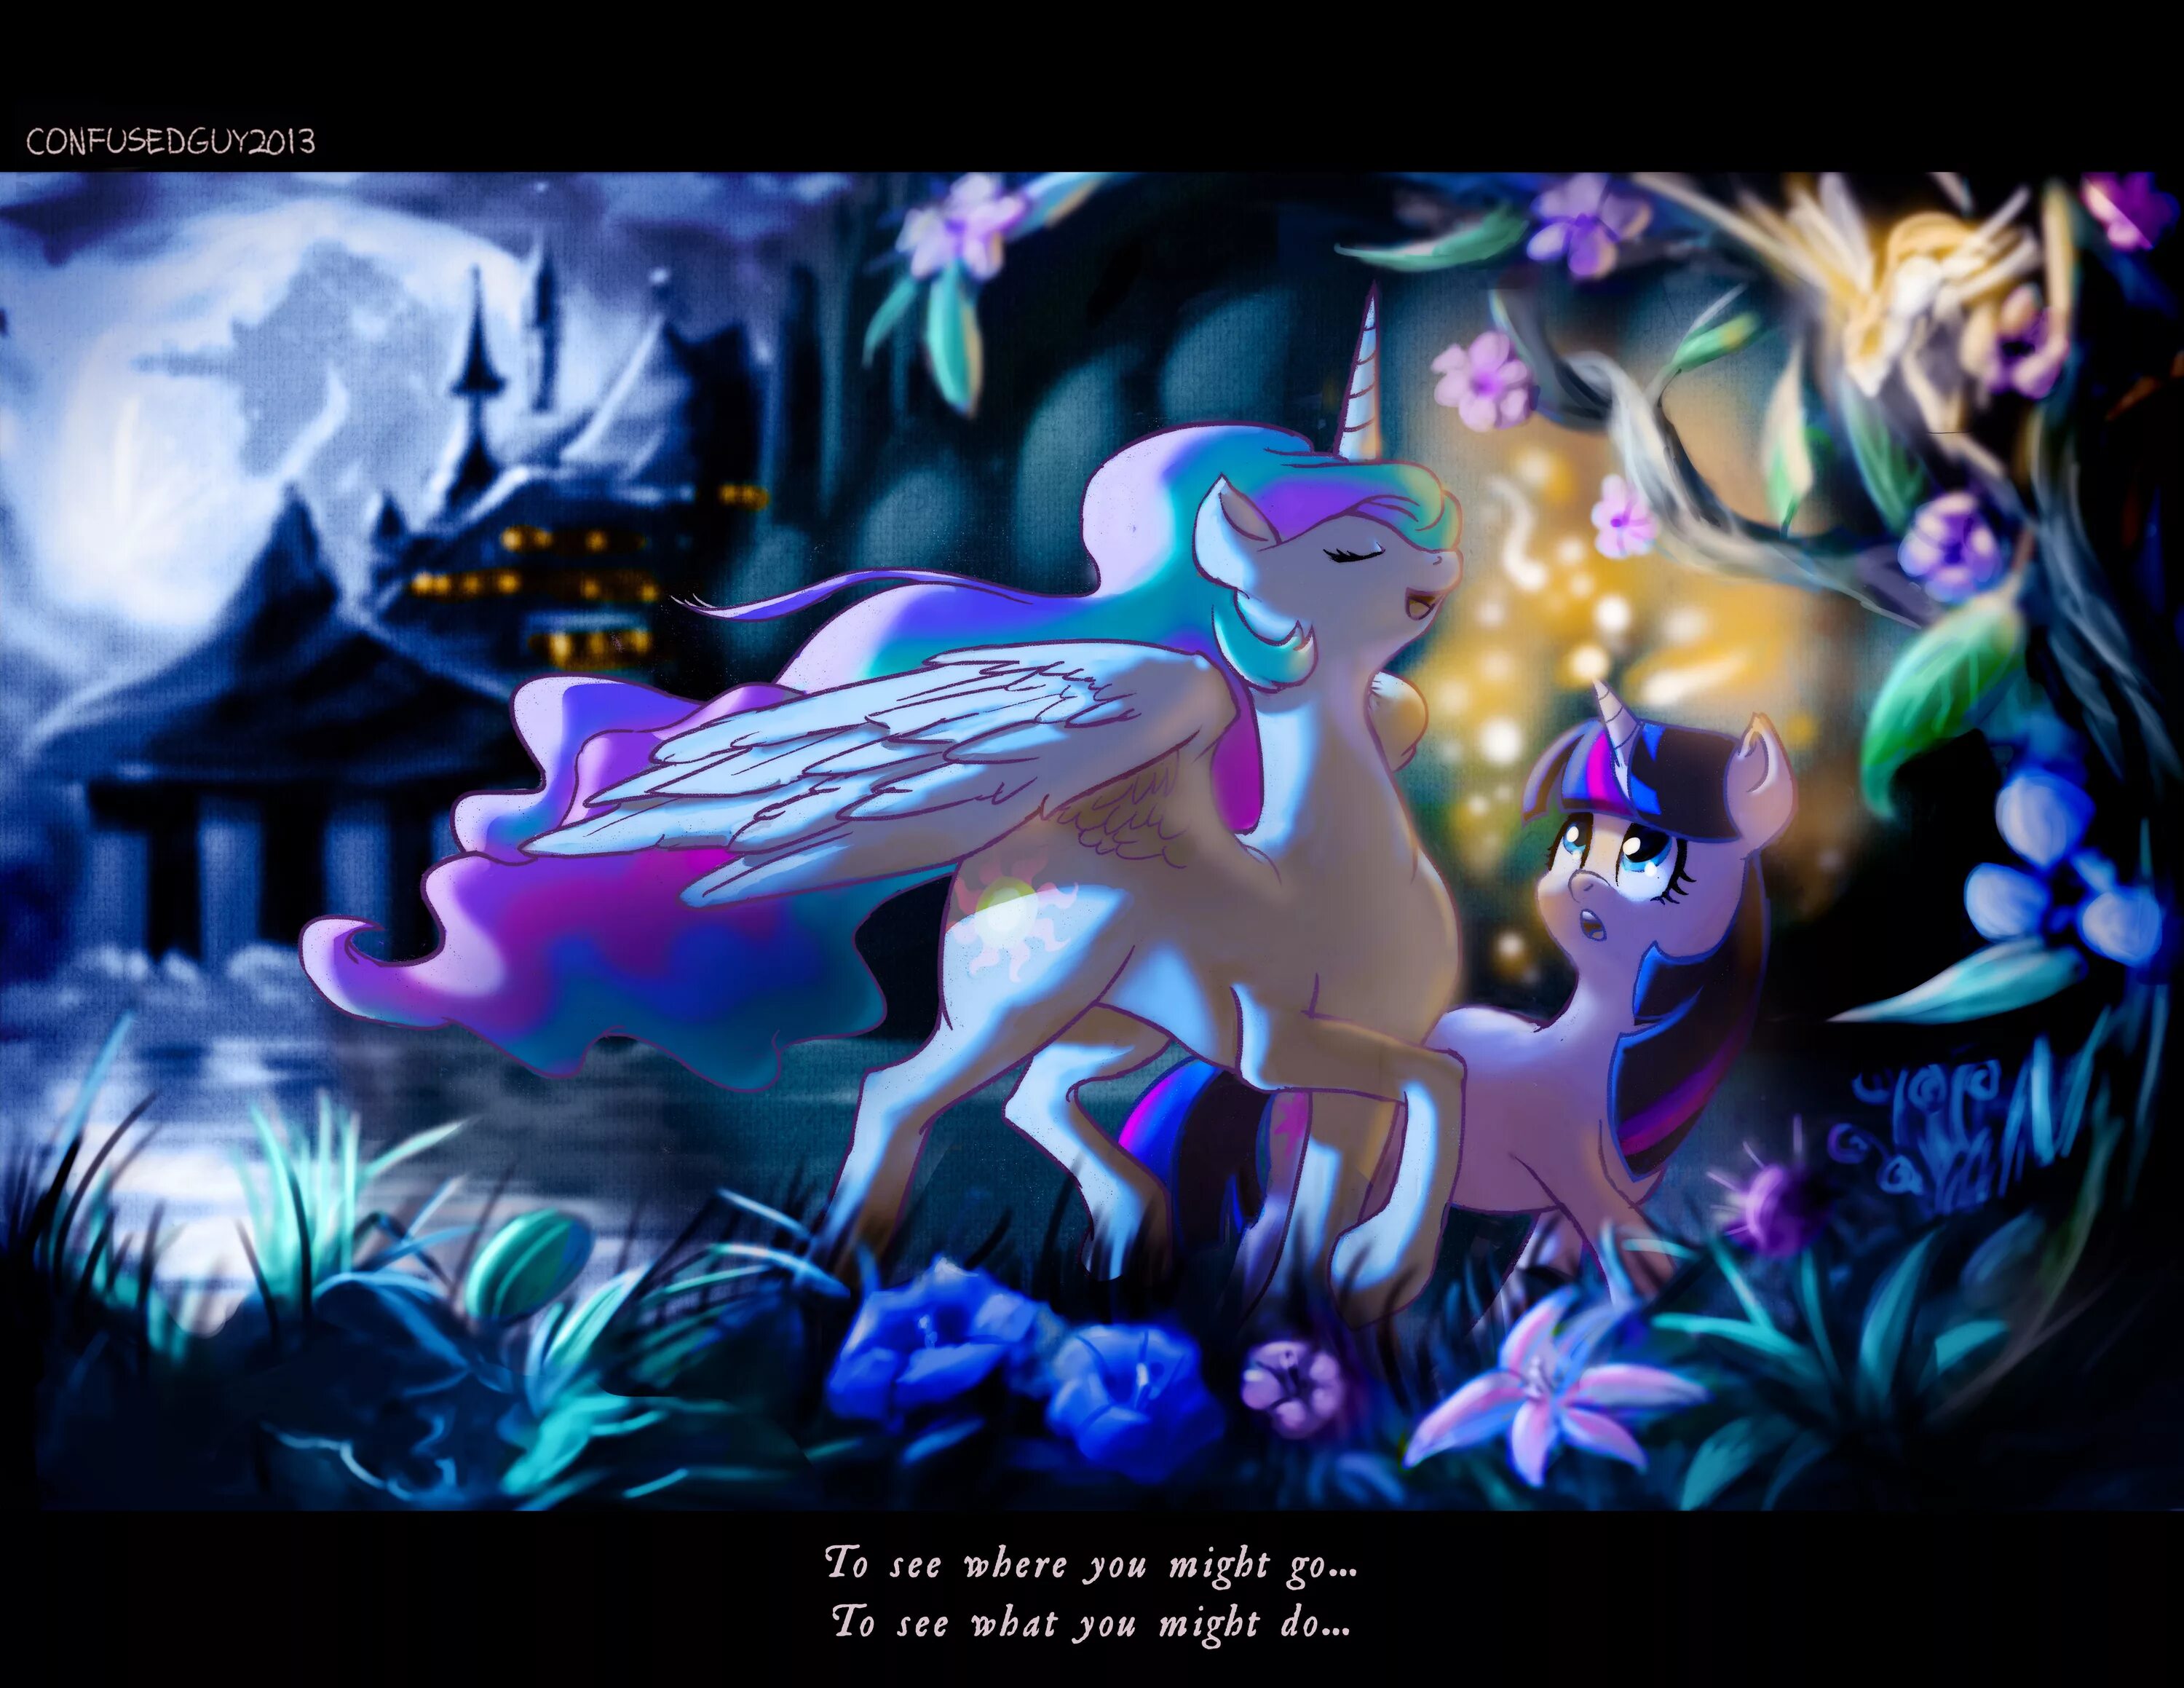 Май литл пони магия принцесс кристаллы. МЛП магия принцесс. My little Pony магия принцесс Кантерлот. МЛП магия принцесс пони. Май Лито пони магич принцесс.